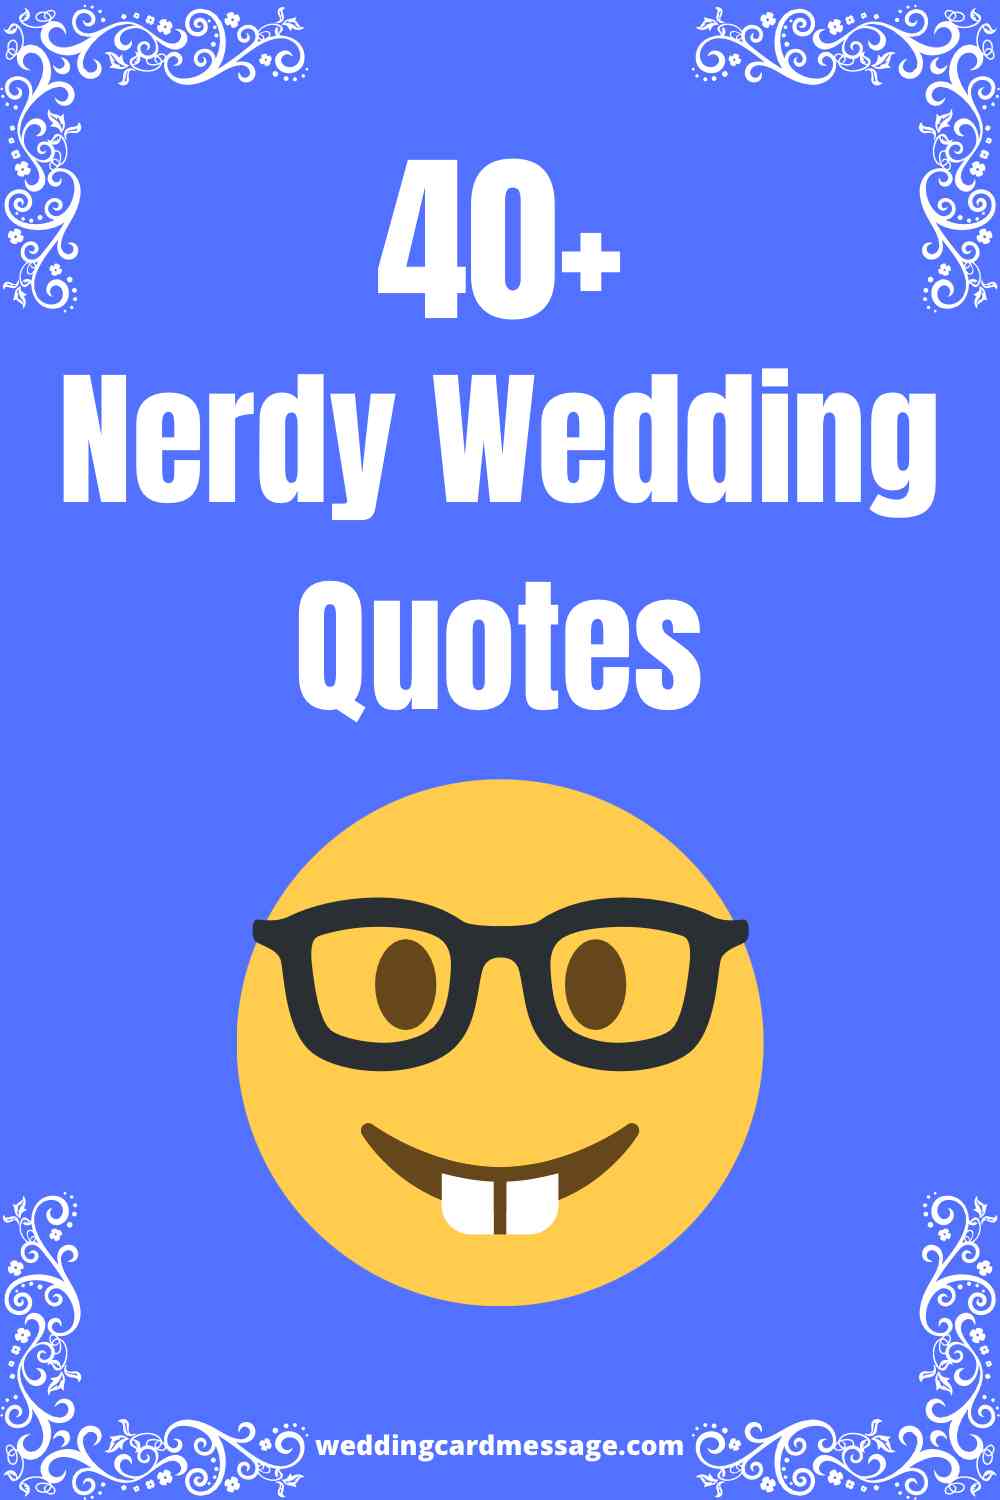 nerdy wedding quotes